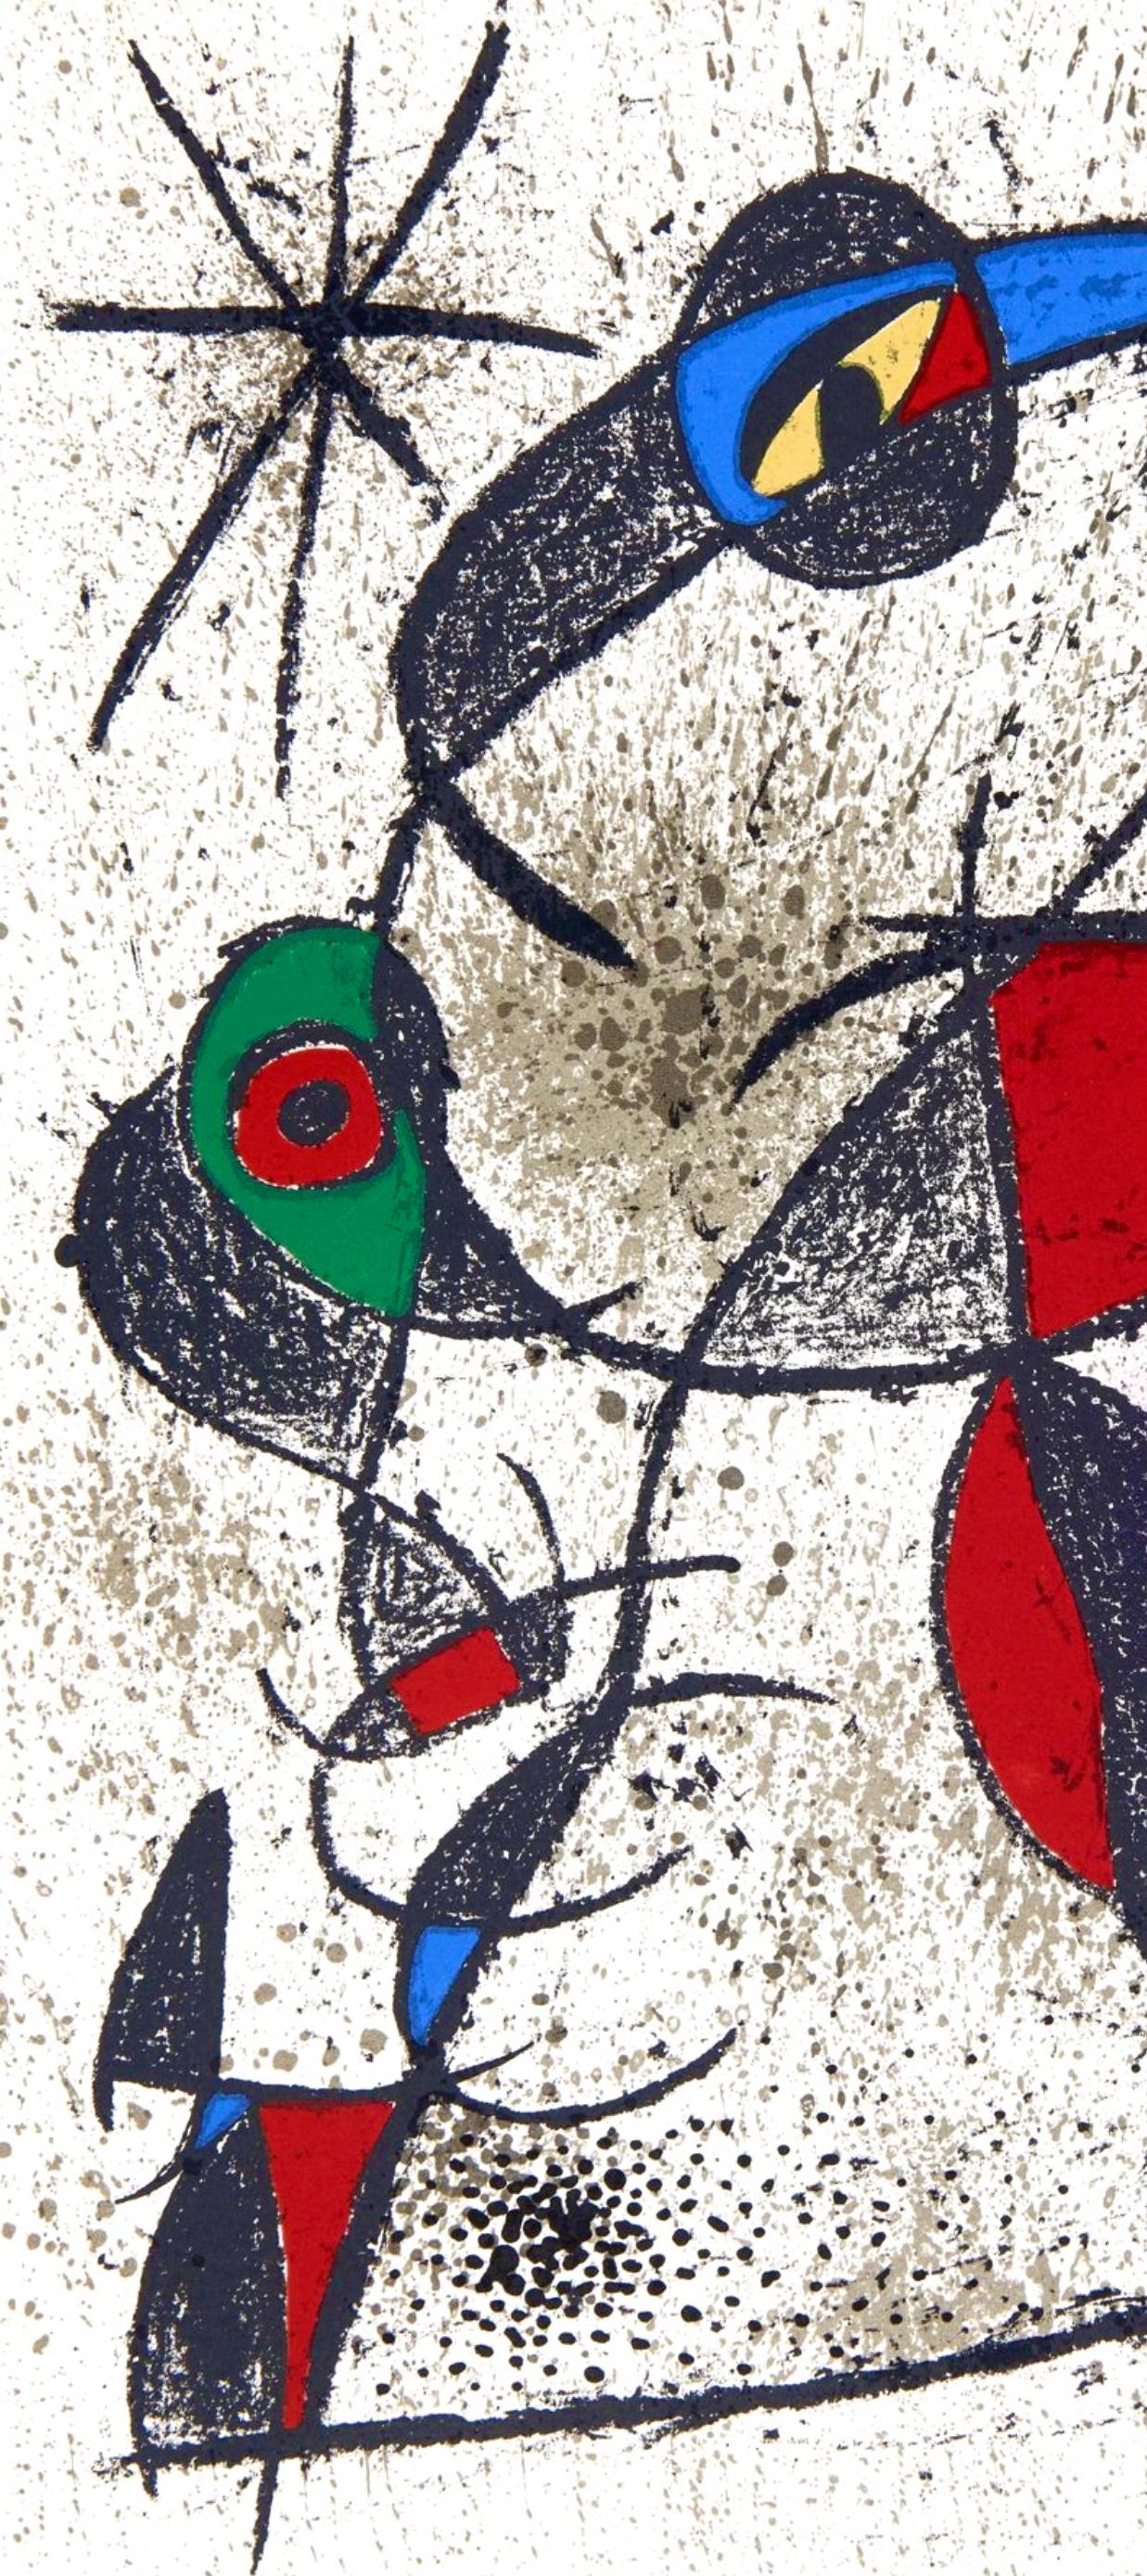 Miró, Faillie du calcaire, Souvenirs et portraits d'artistes (after) - Print by Joan Miró